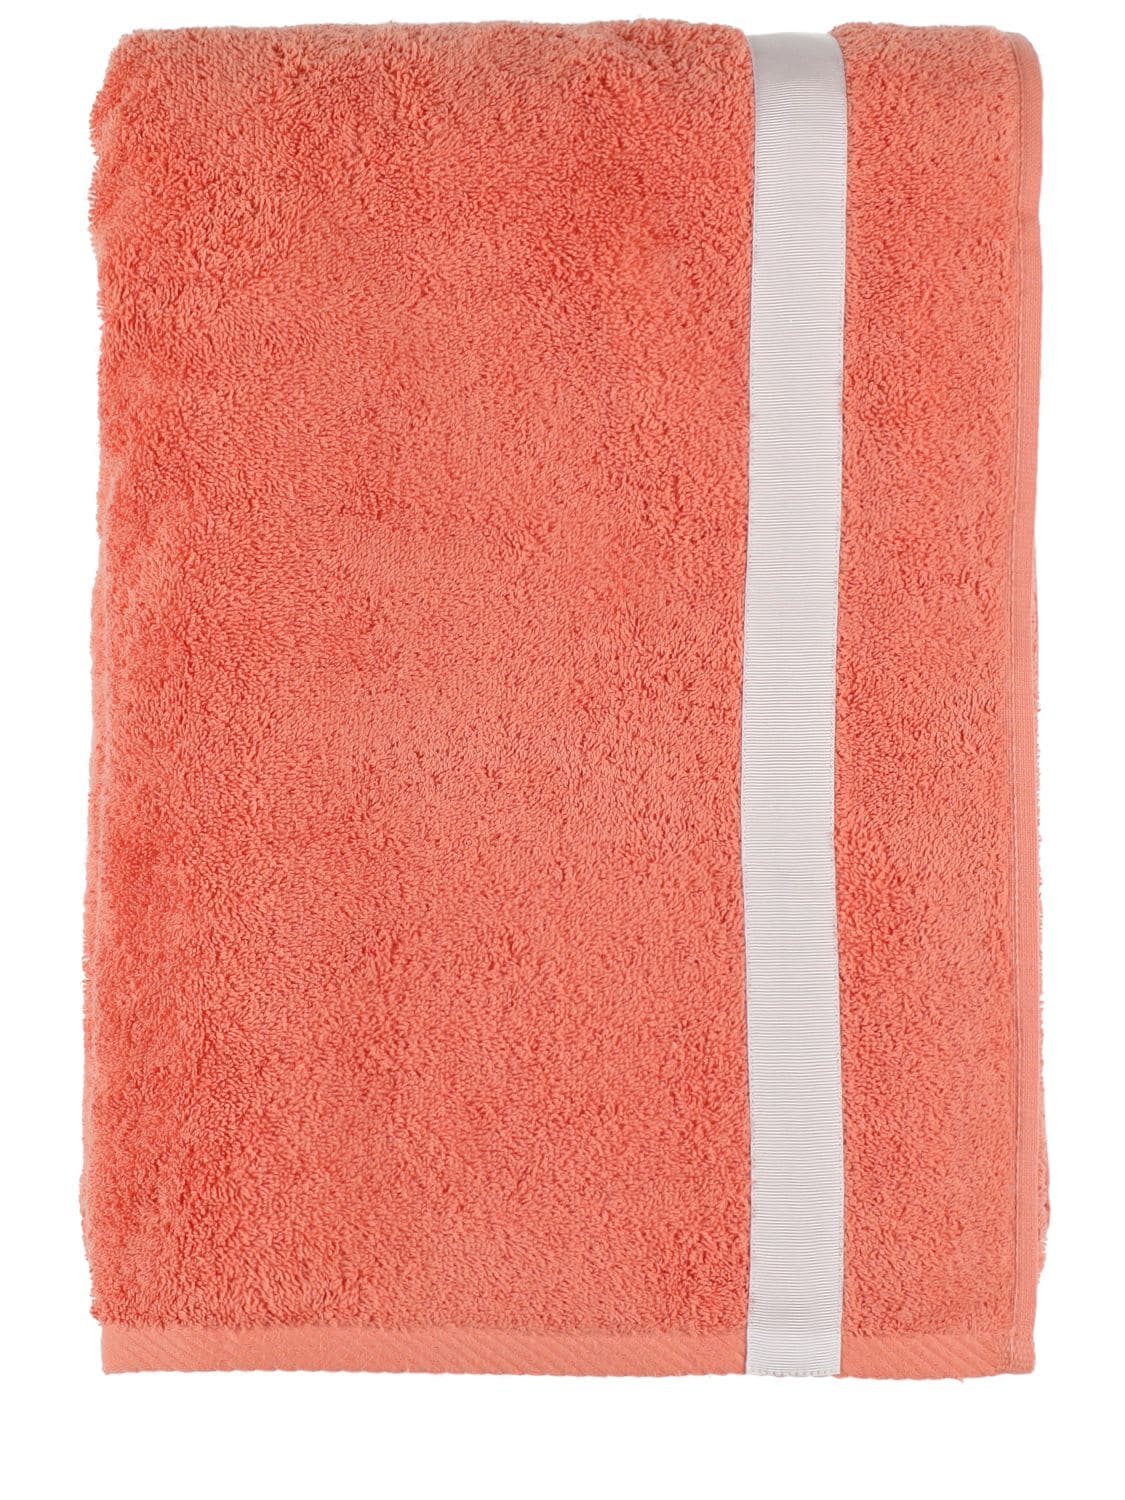 Alessandro Di Marco Cotton Terrycloth Bath Towel In Orange